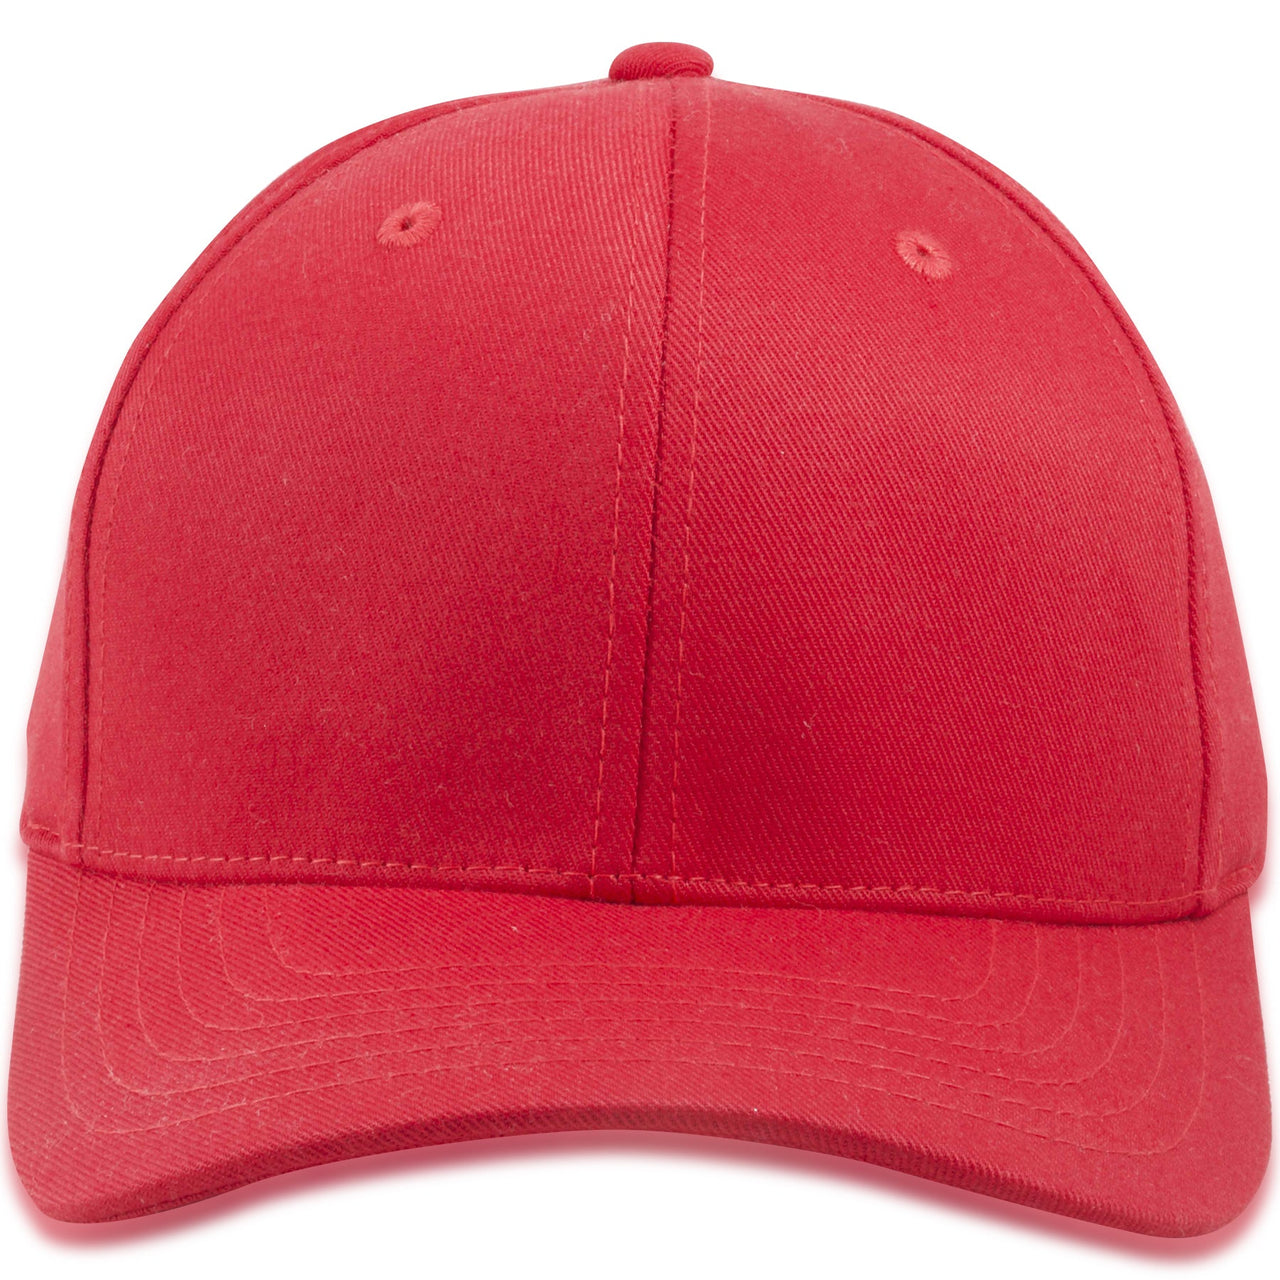 Red Blank Structured Flexfit Cap